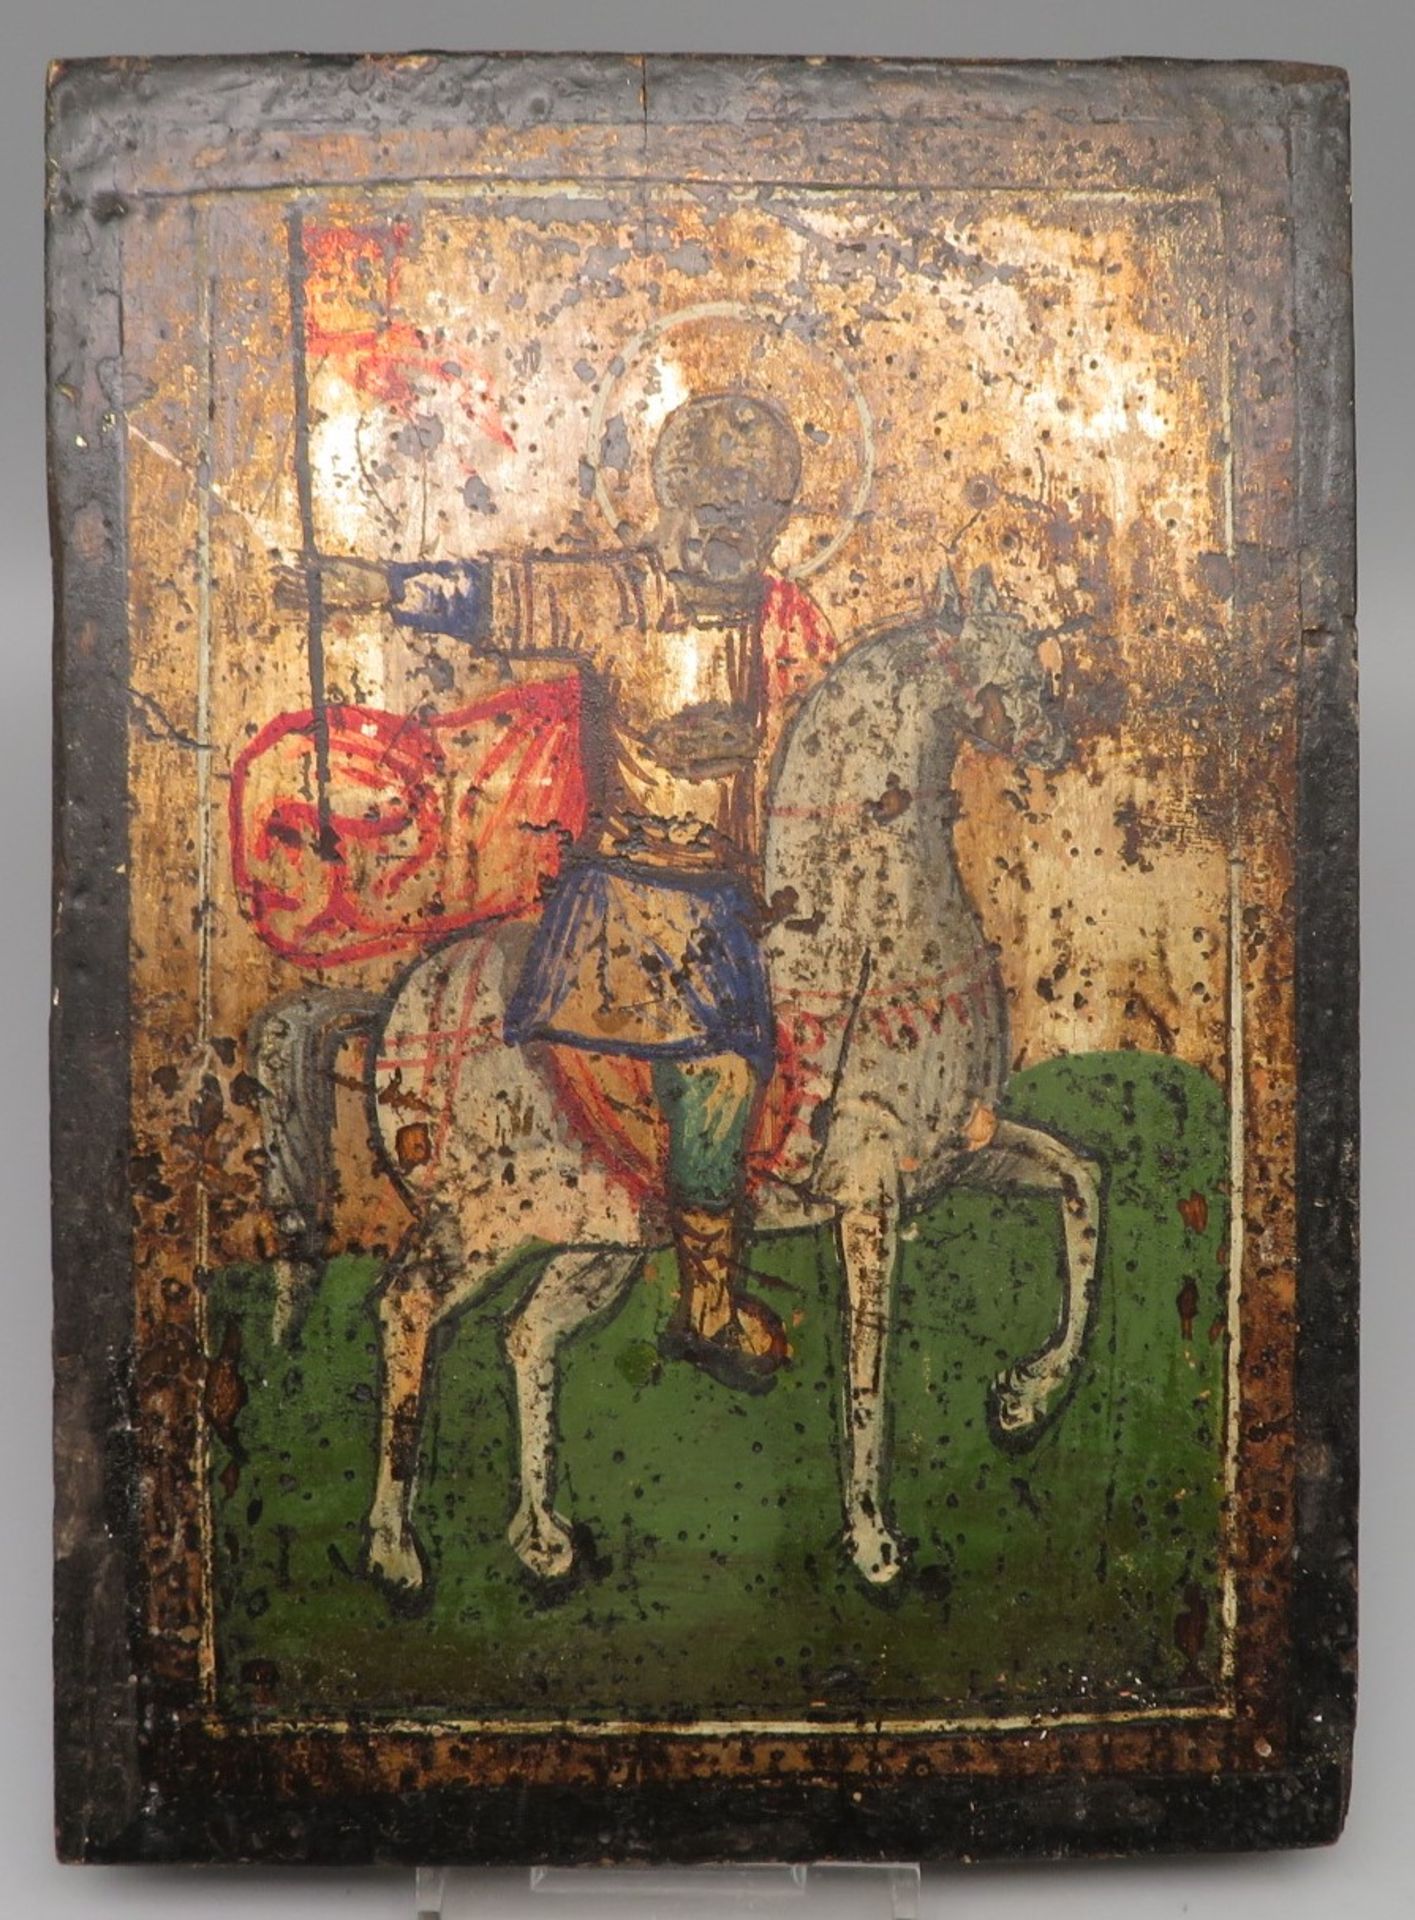 Ikone, Griechenland, 19. Jahrhundert, "Heiliger zu Pferd", Öl/Holz, 21,2 x 15,3 x 1,9 cm.